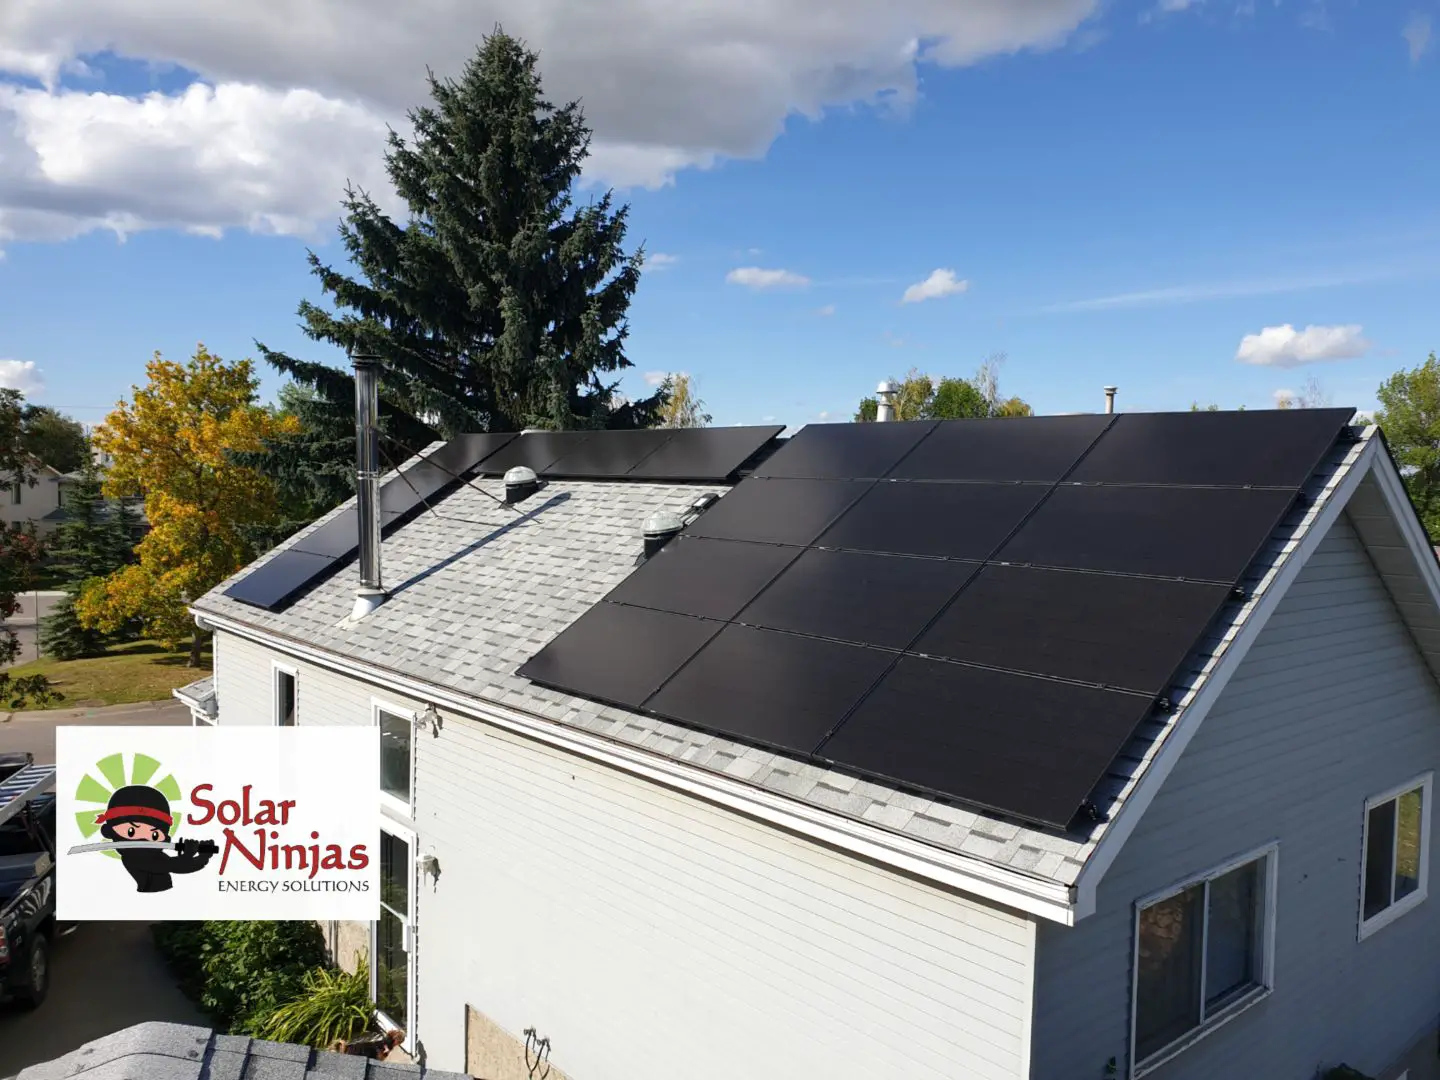 SolarNinjas Energy Solutions Ltd